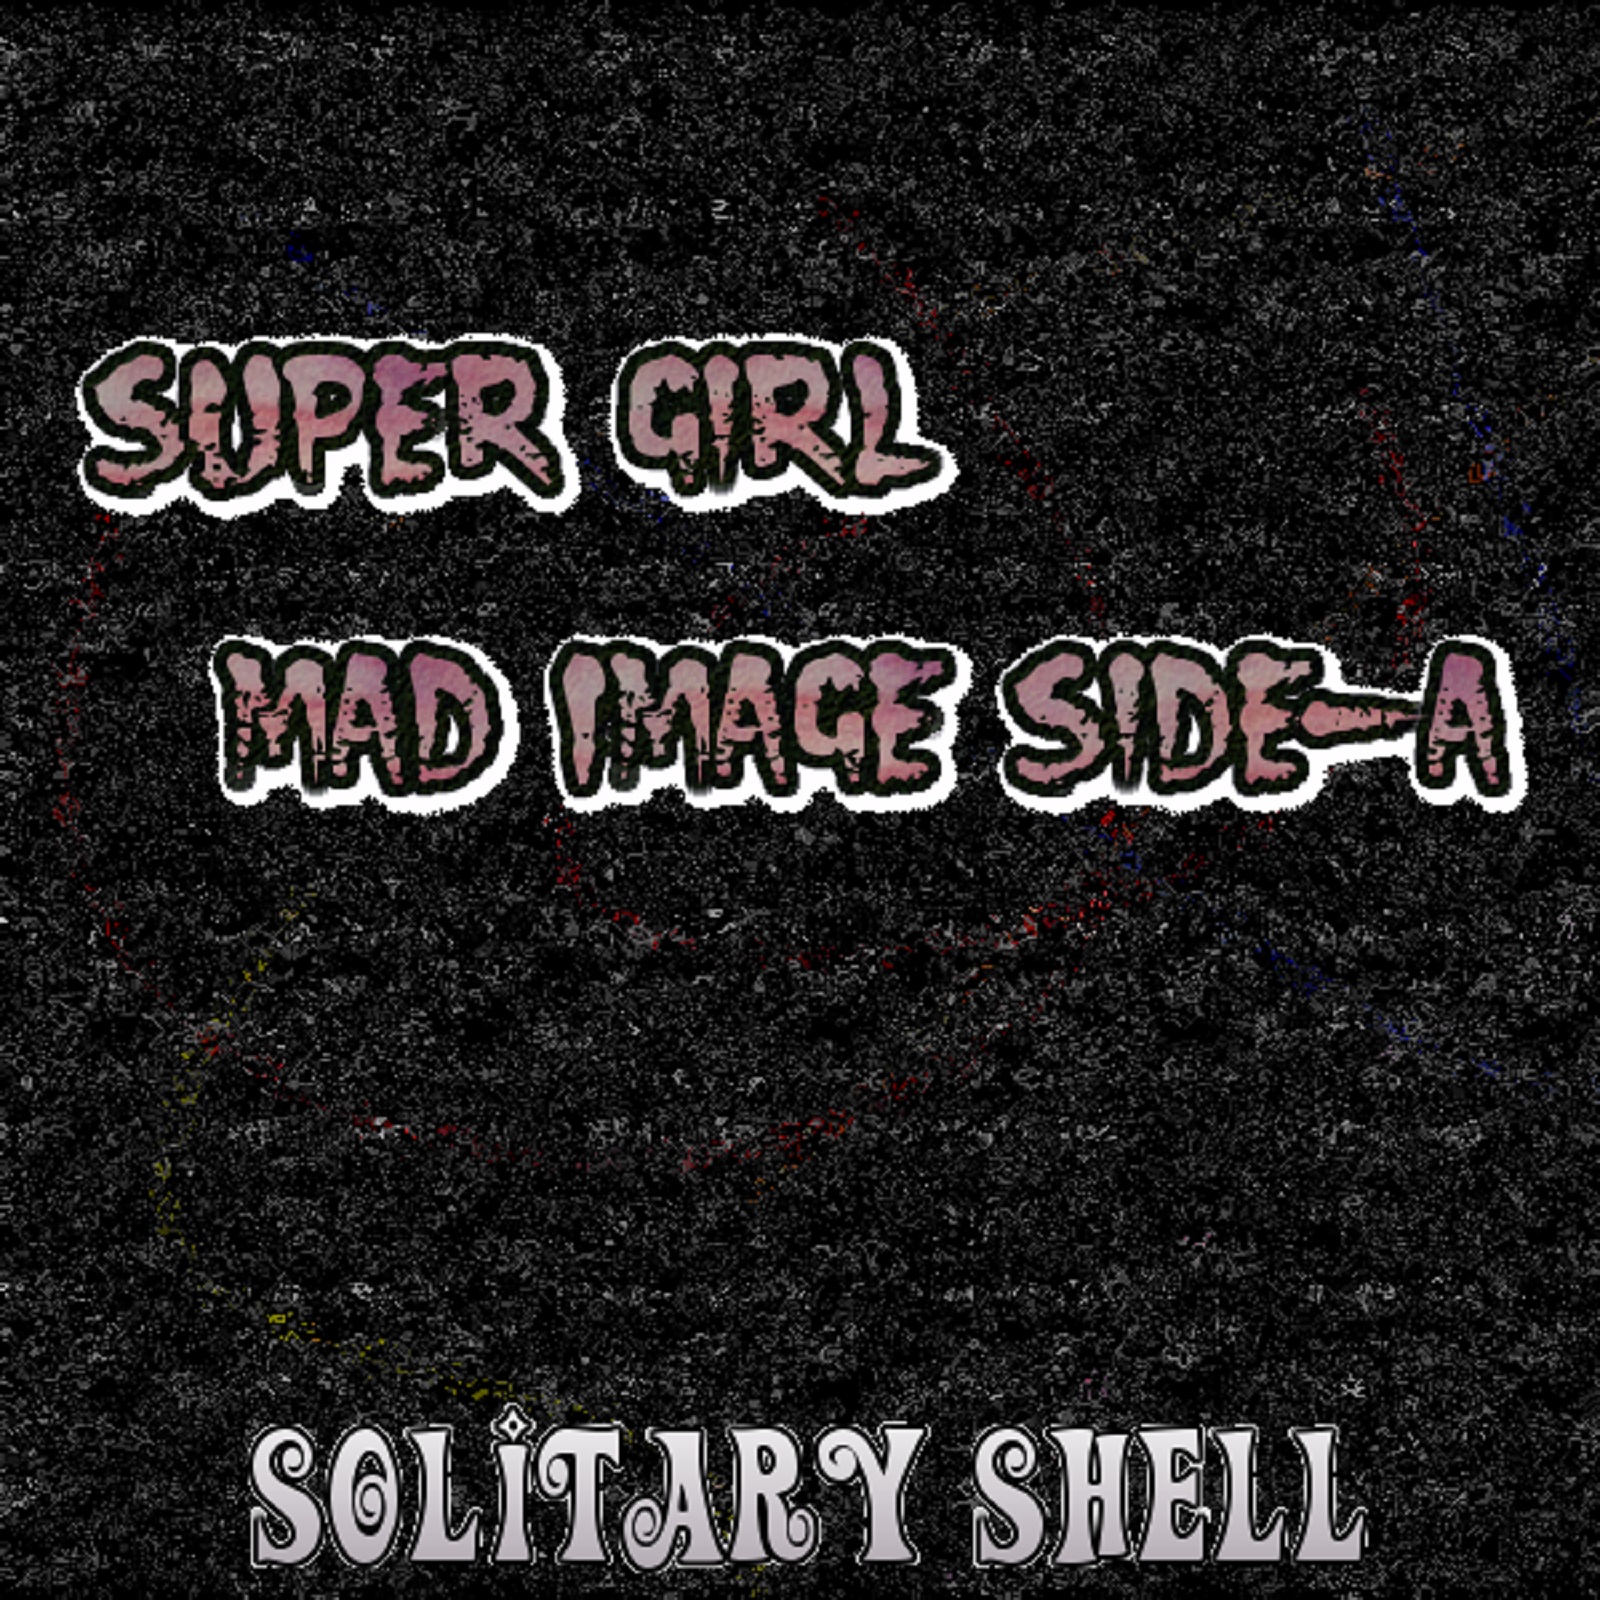 Super Girl/Solitay Shell